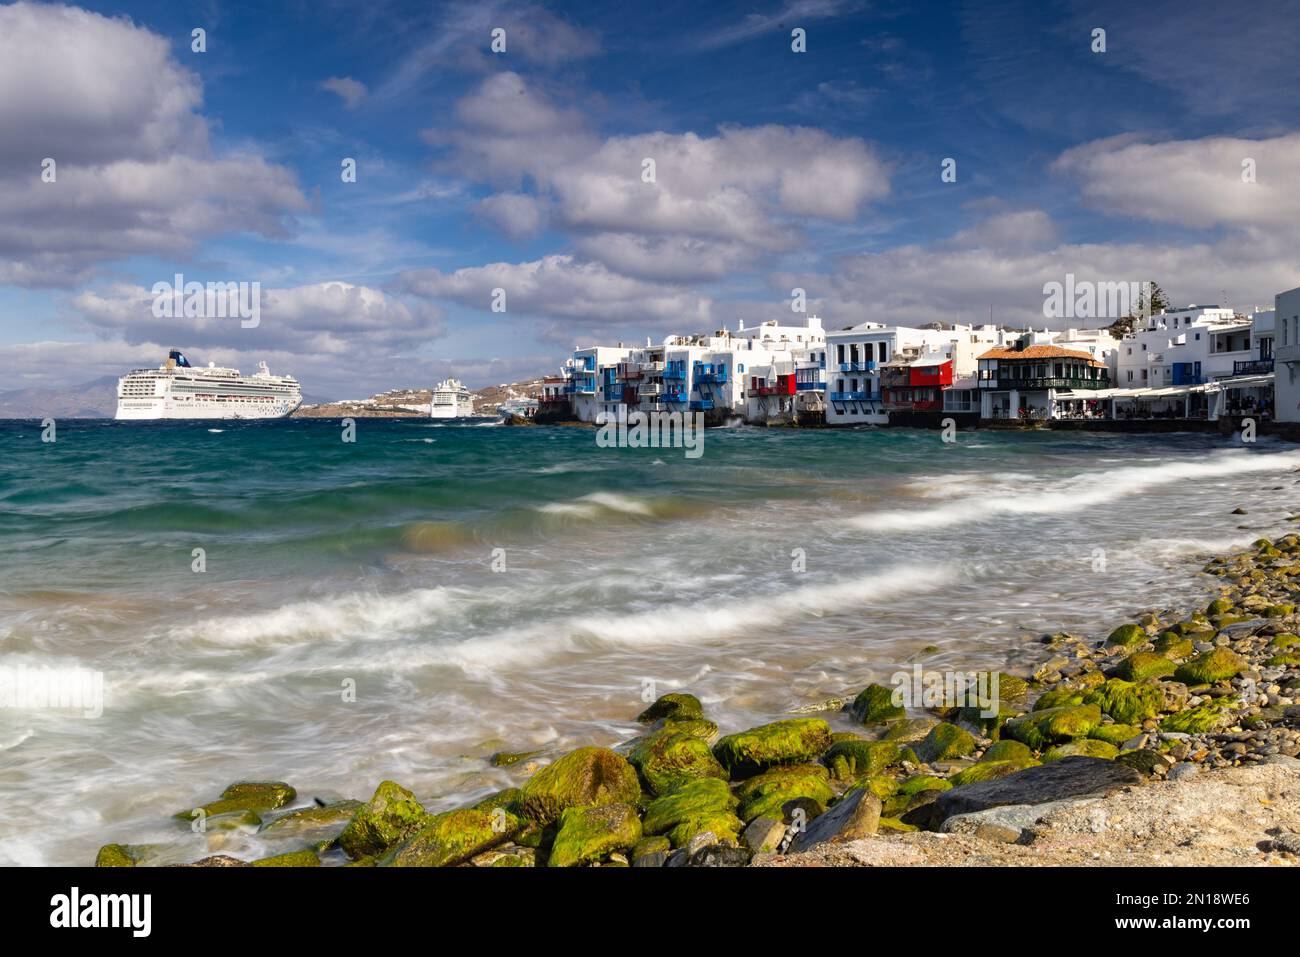 Navire de croisière Norwegian Gem dans le port de Mikonos, Mykonos, Grèce Banque D'Images